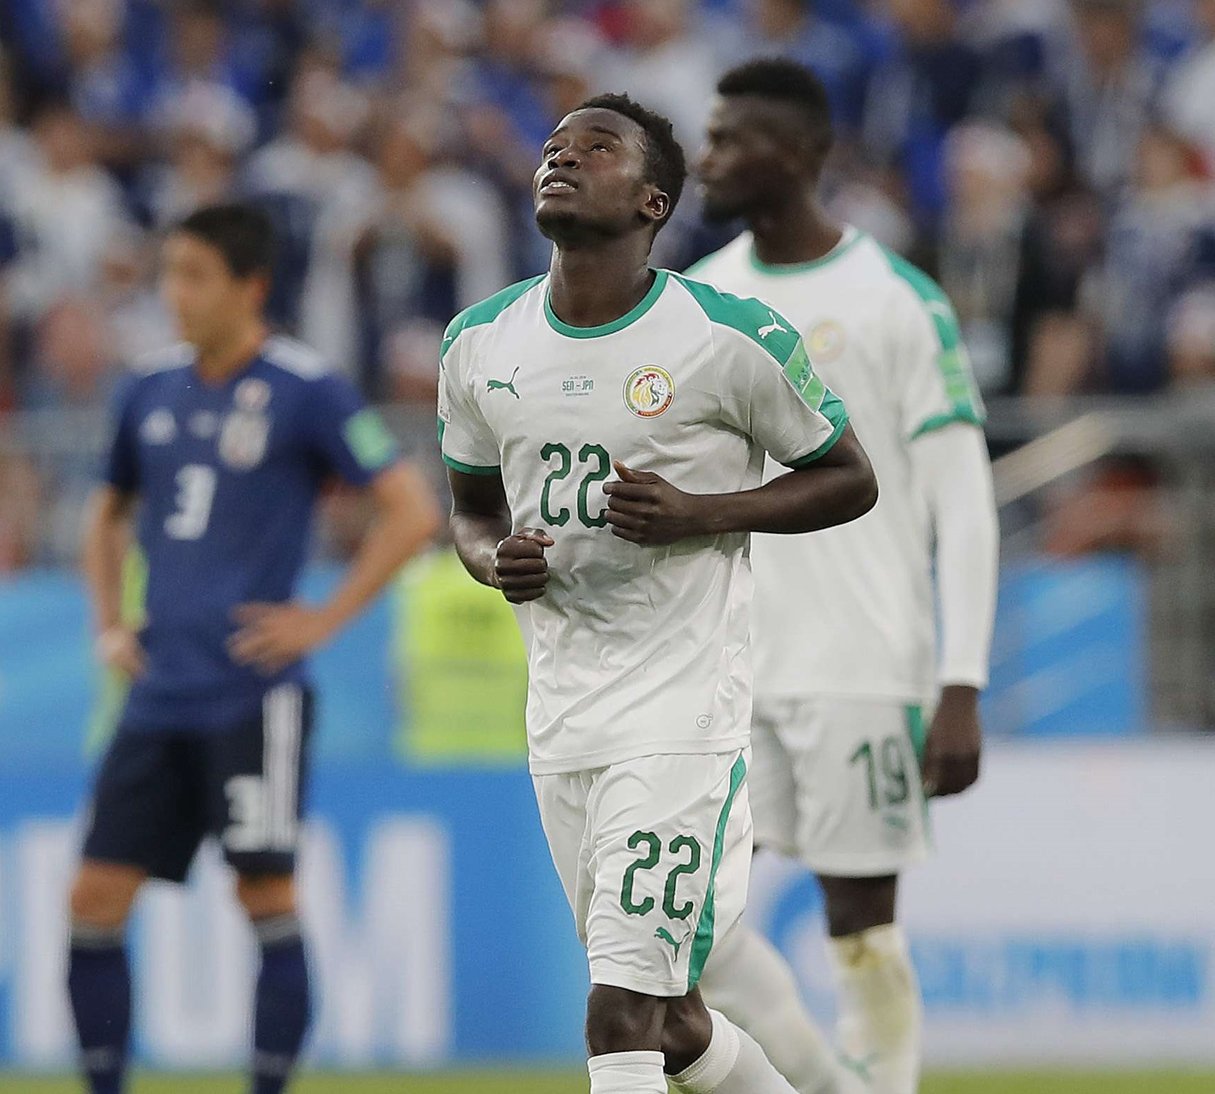 Le Sénégalais Moussa Wague, à droite, célèbre le deuxième but de son équipe lors du match du groupe H entre le Japon et le Sénégal à la Coupe du monde de football 2018 en Russie, le 24 juin 2018. &copy; Vadim Ghirda/AP/SIPA